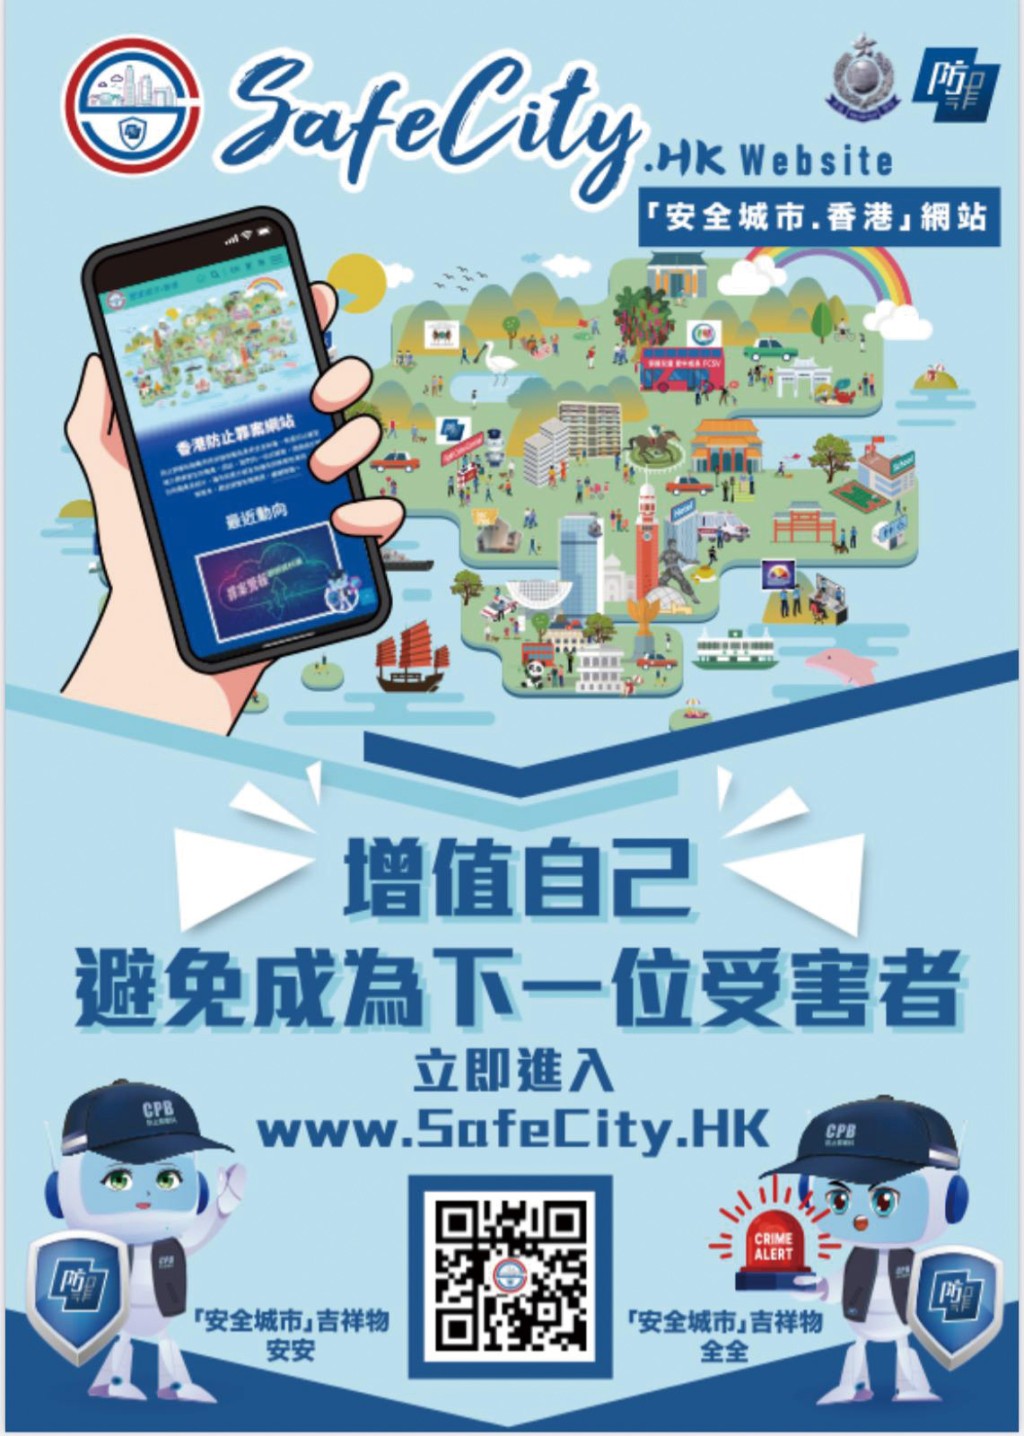 「安全城市．香港」網站設有一男一女吉祥物 「安安」和「全全」。  